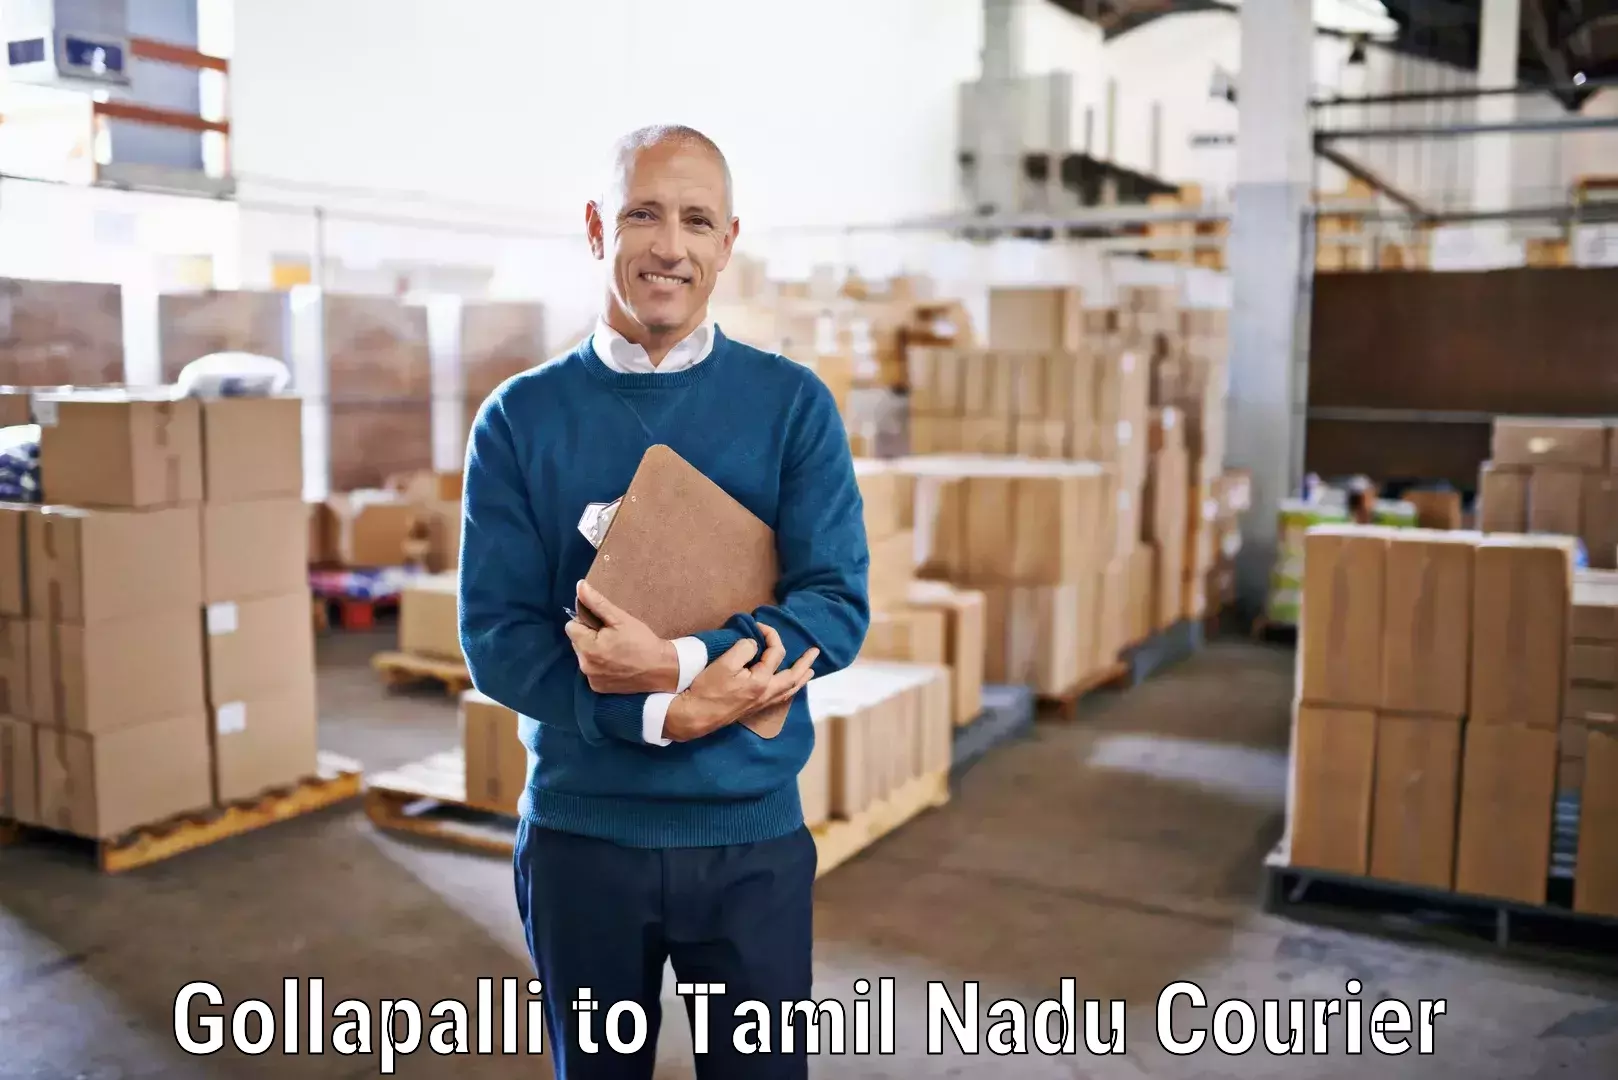 24/7 courier service Gollapalli to Neyveli